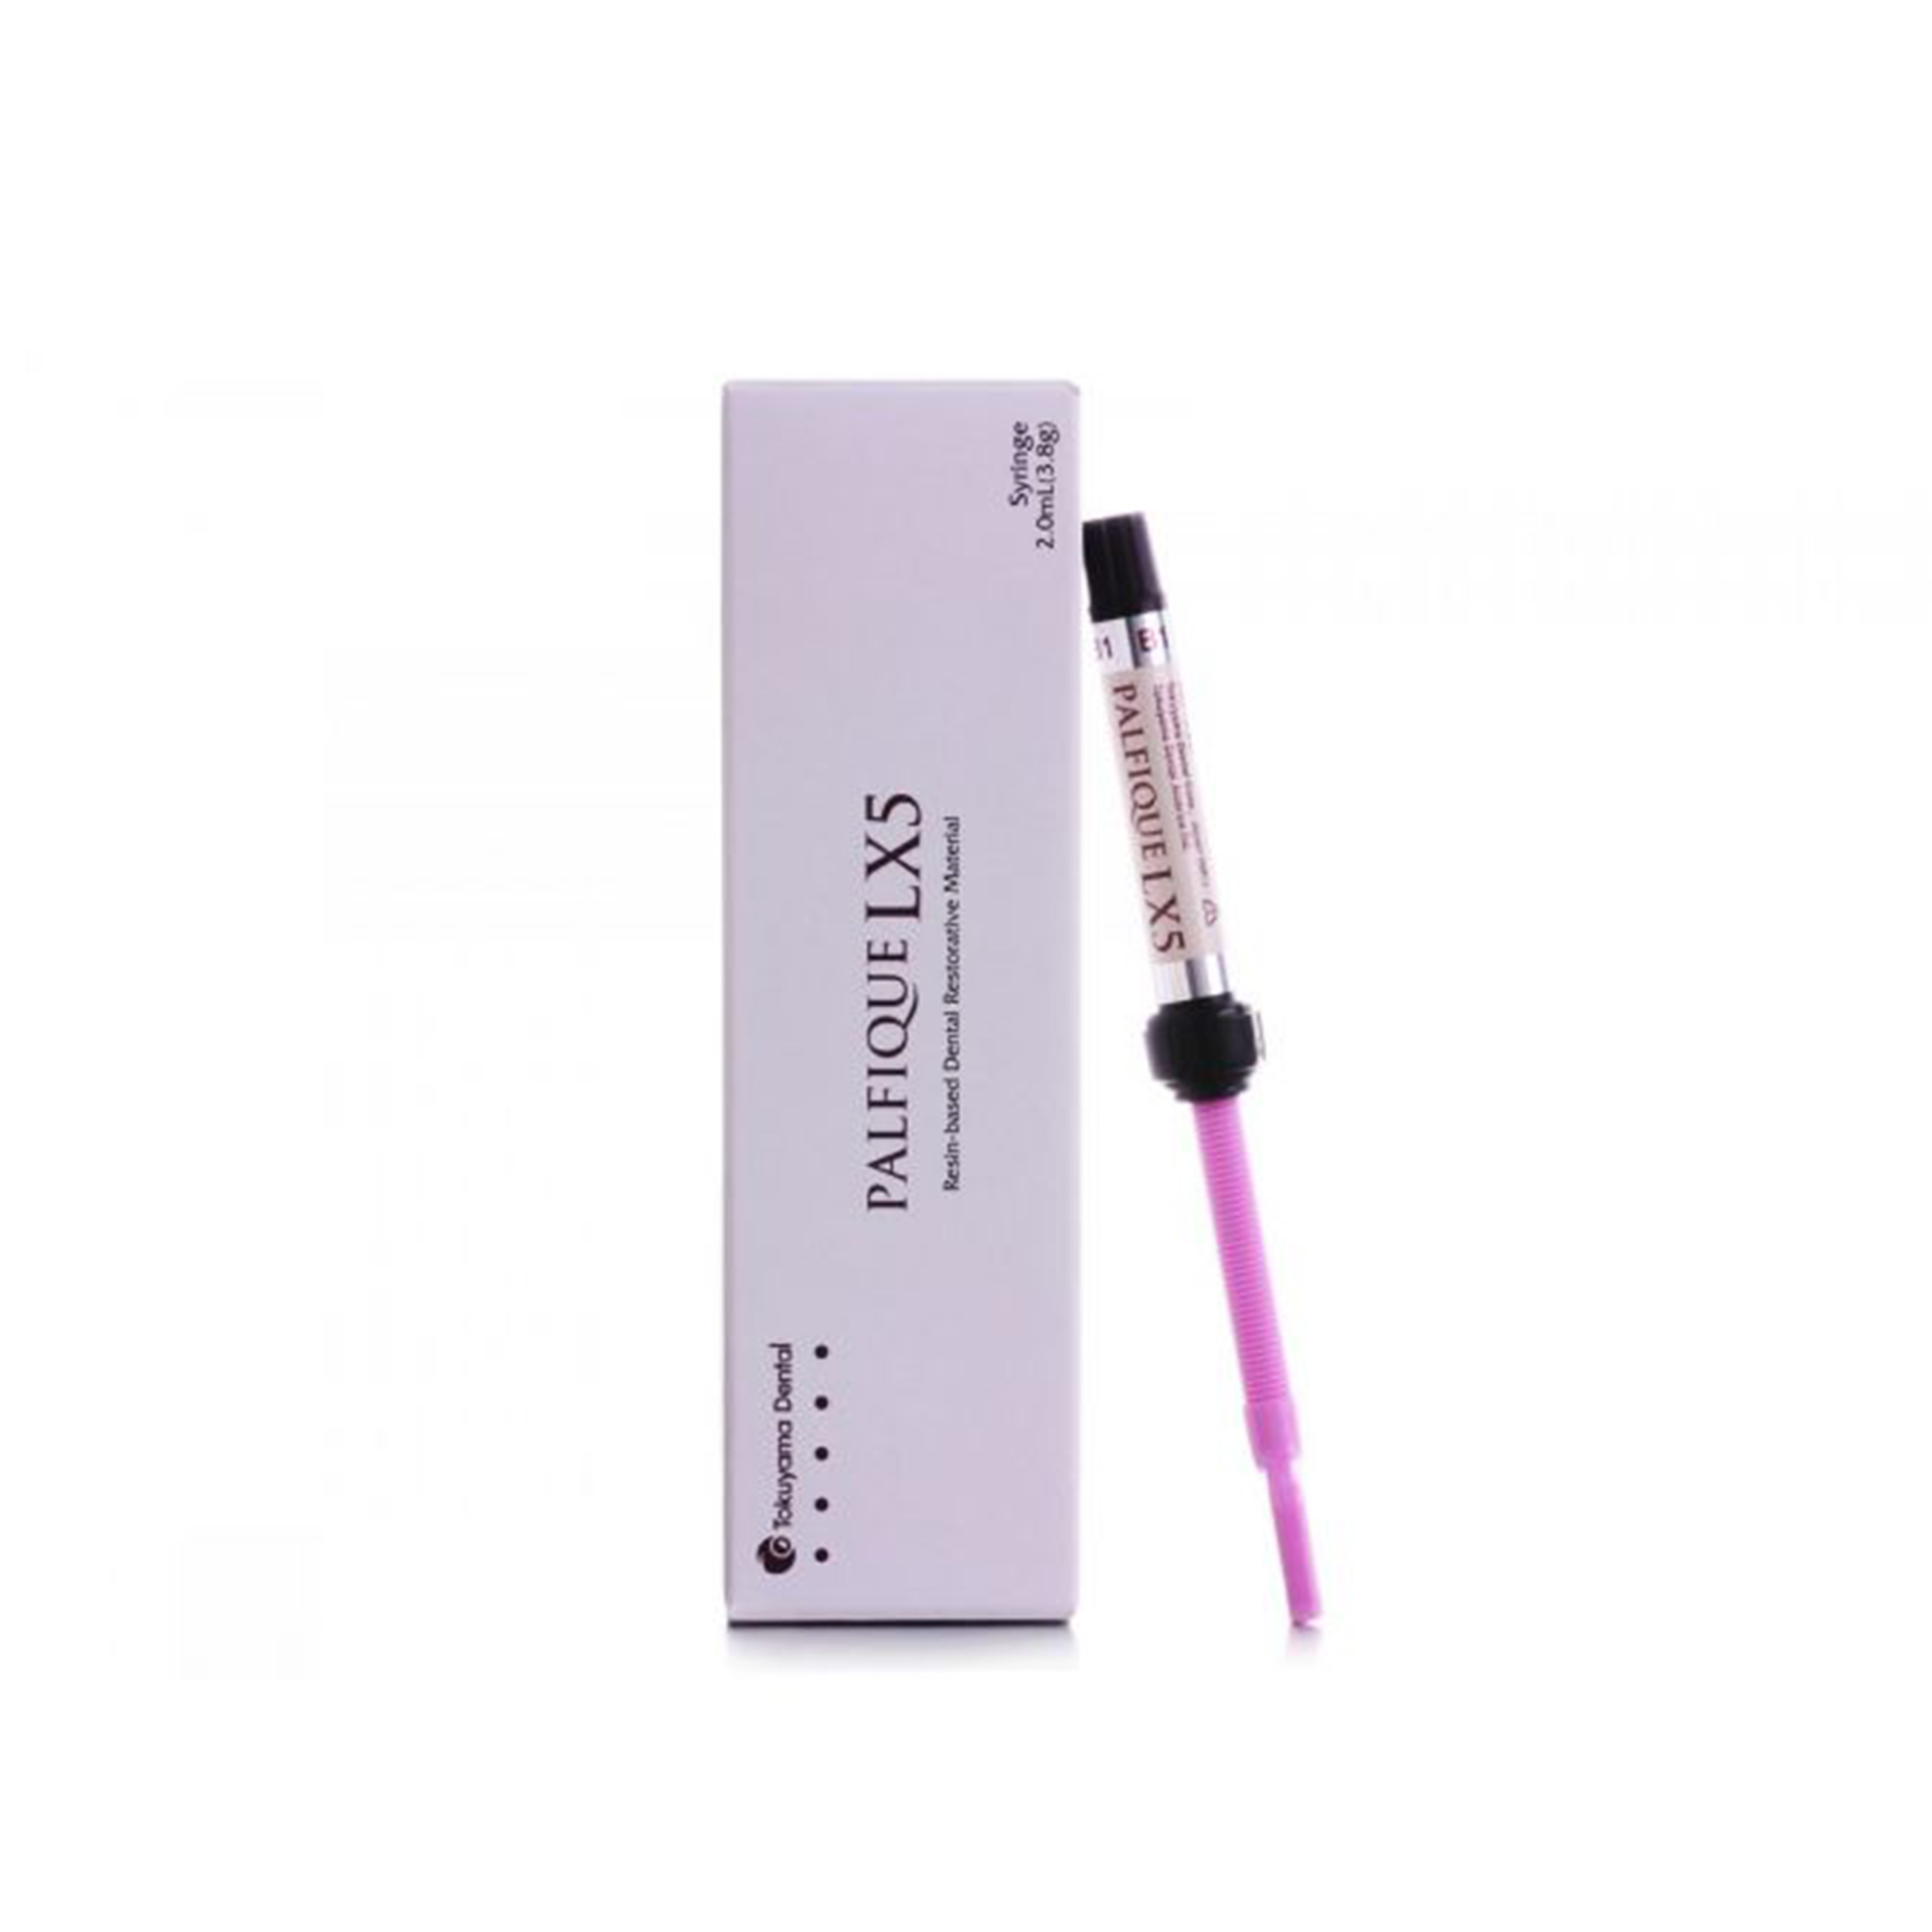 Tokuyama Palfique Lx5 Syringe 3.8gm Refill CE